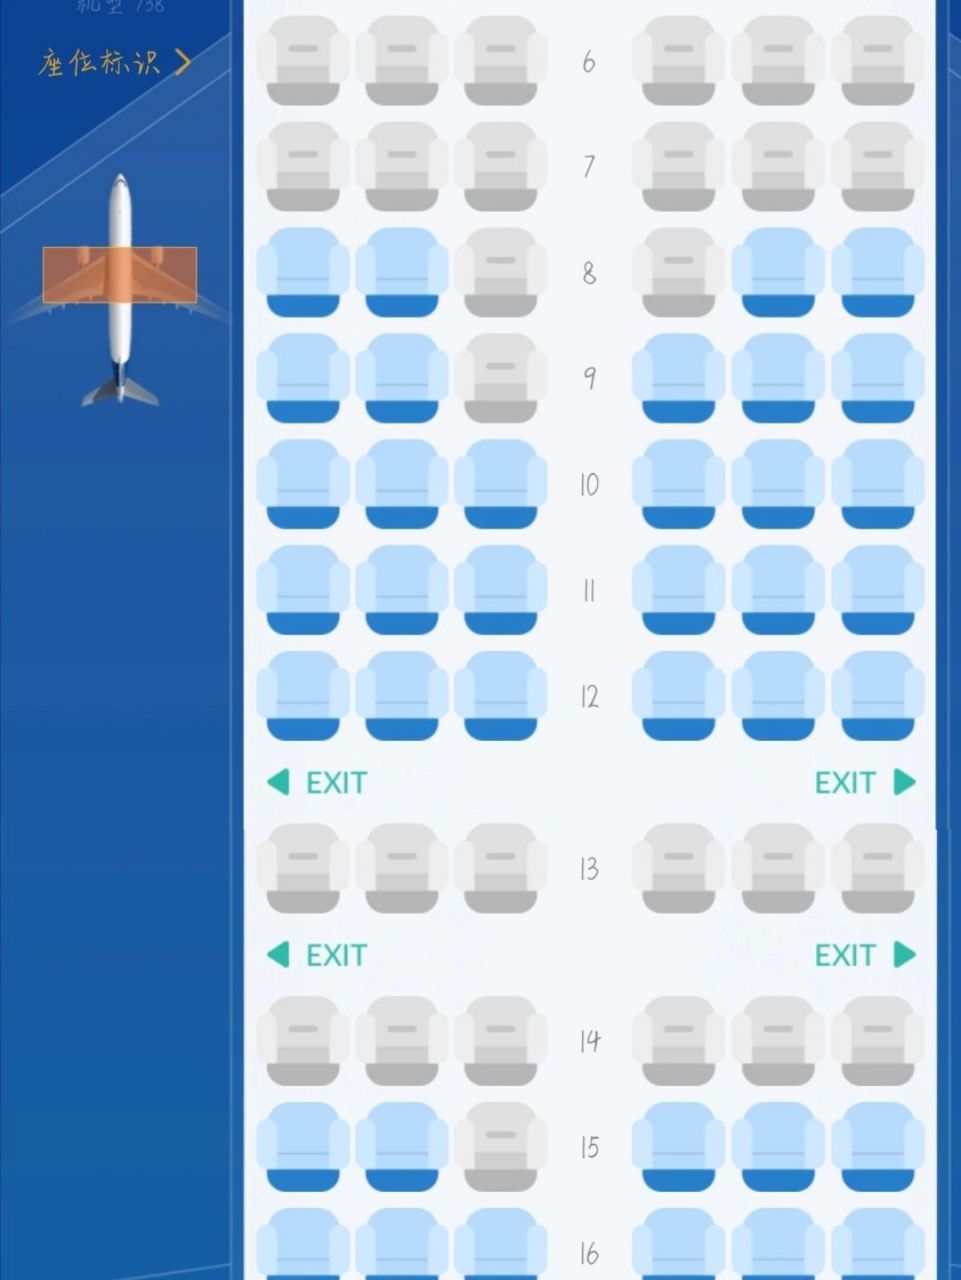 咱也是第一次坐飞机 不知道选哪个座位会好呢 主要怕我晕机